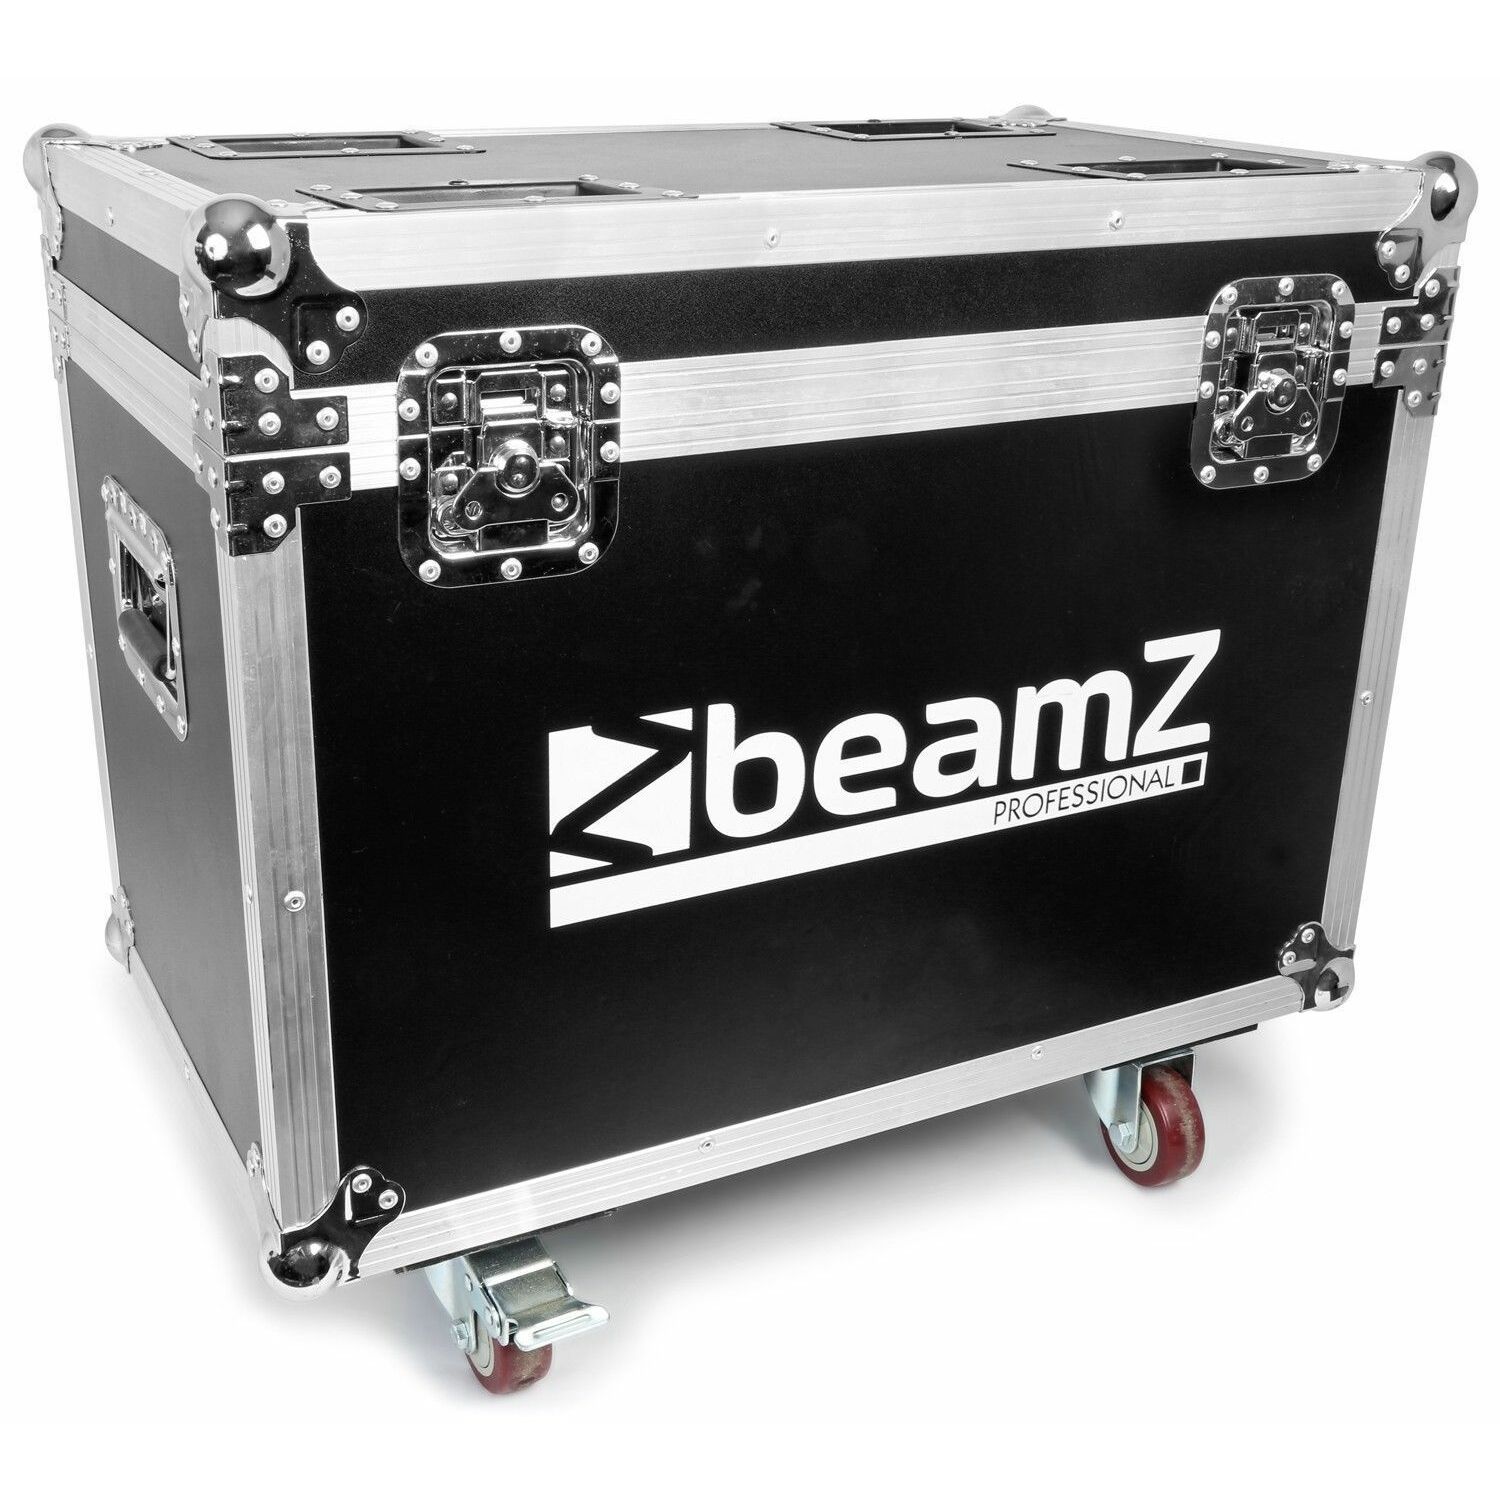 Flightcase - BeamZ flightcase voor 2x IGNITE180 series moving heads